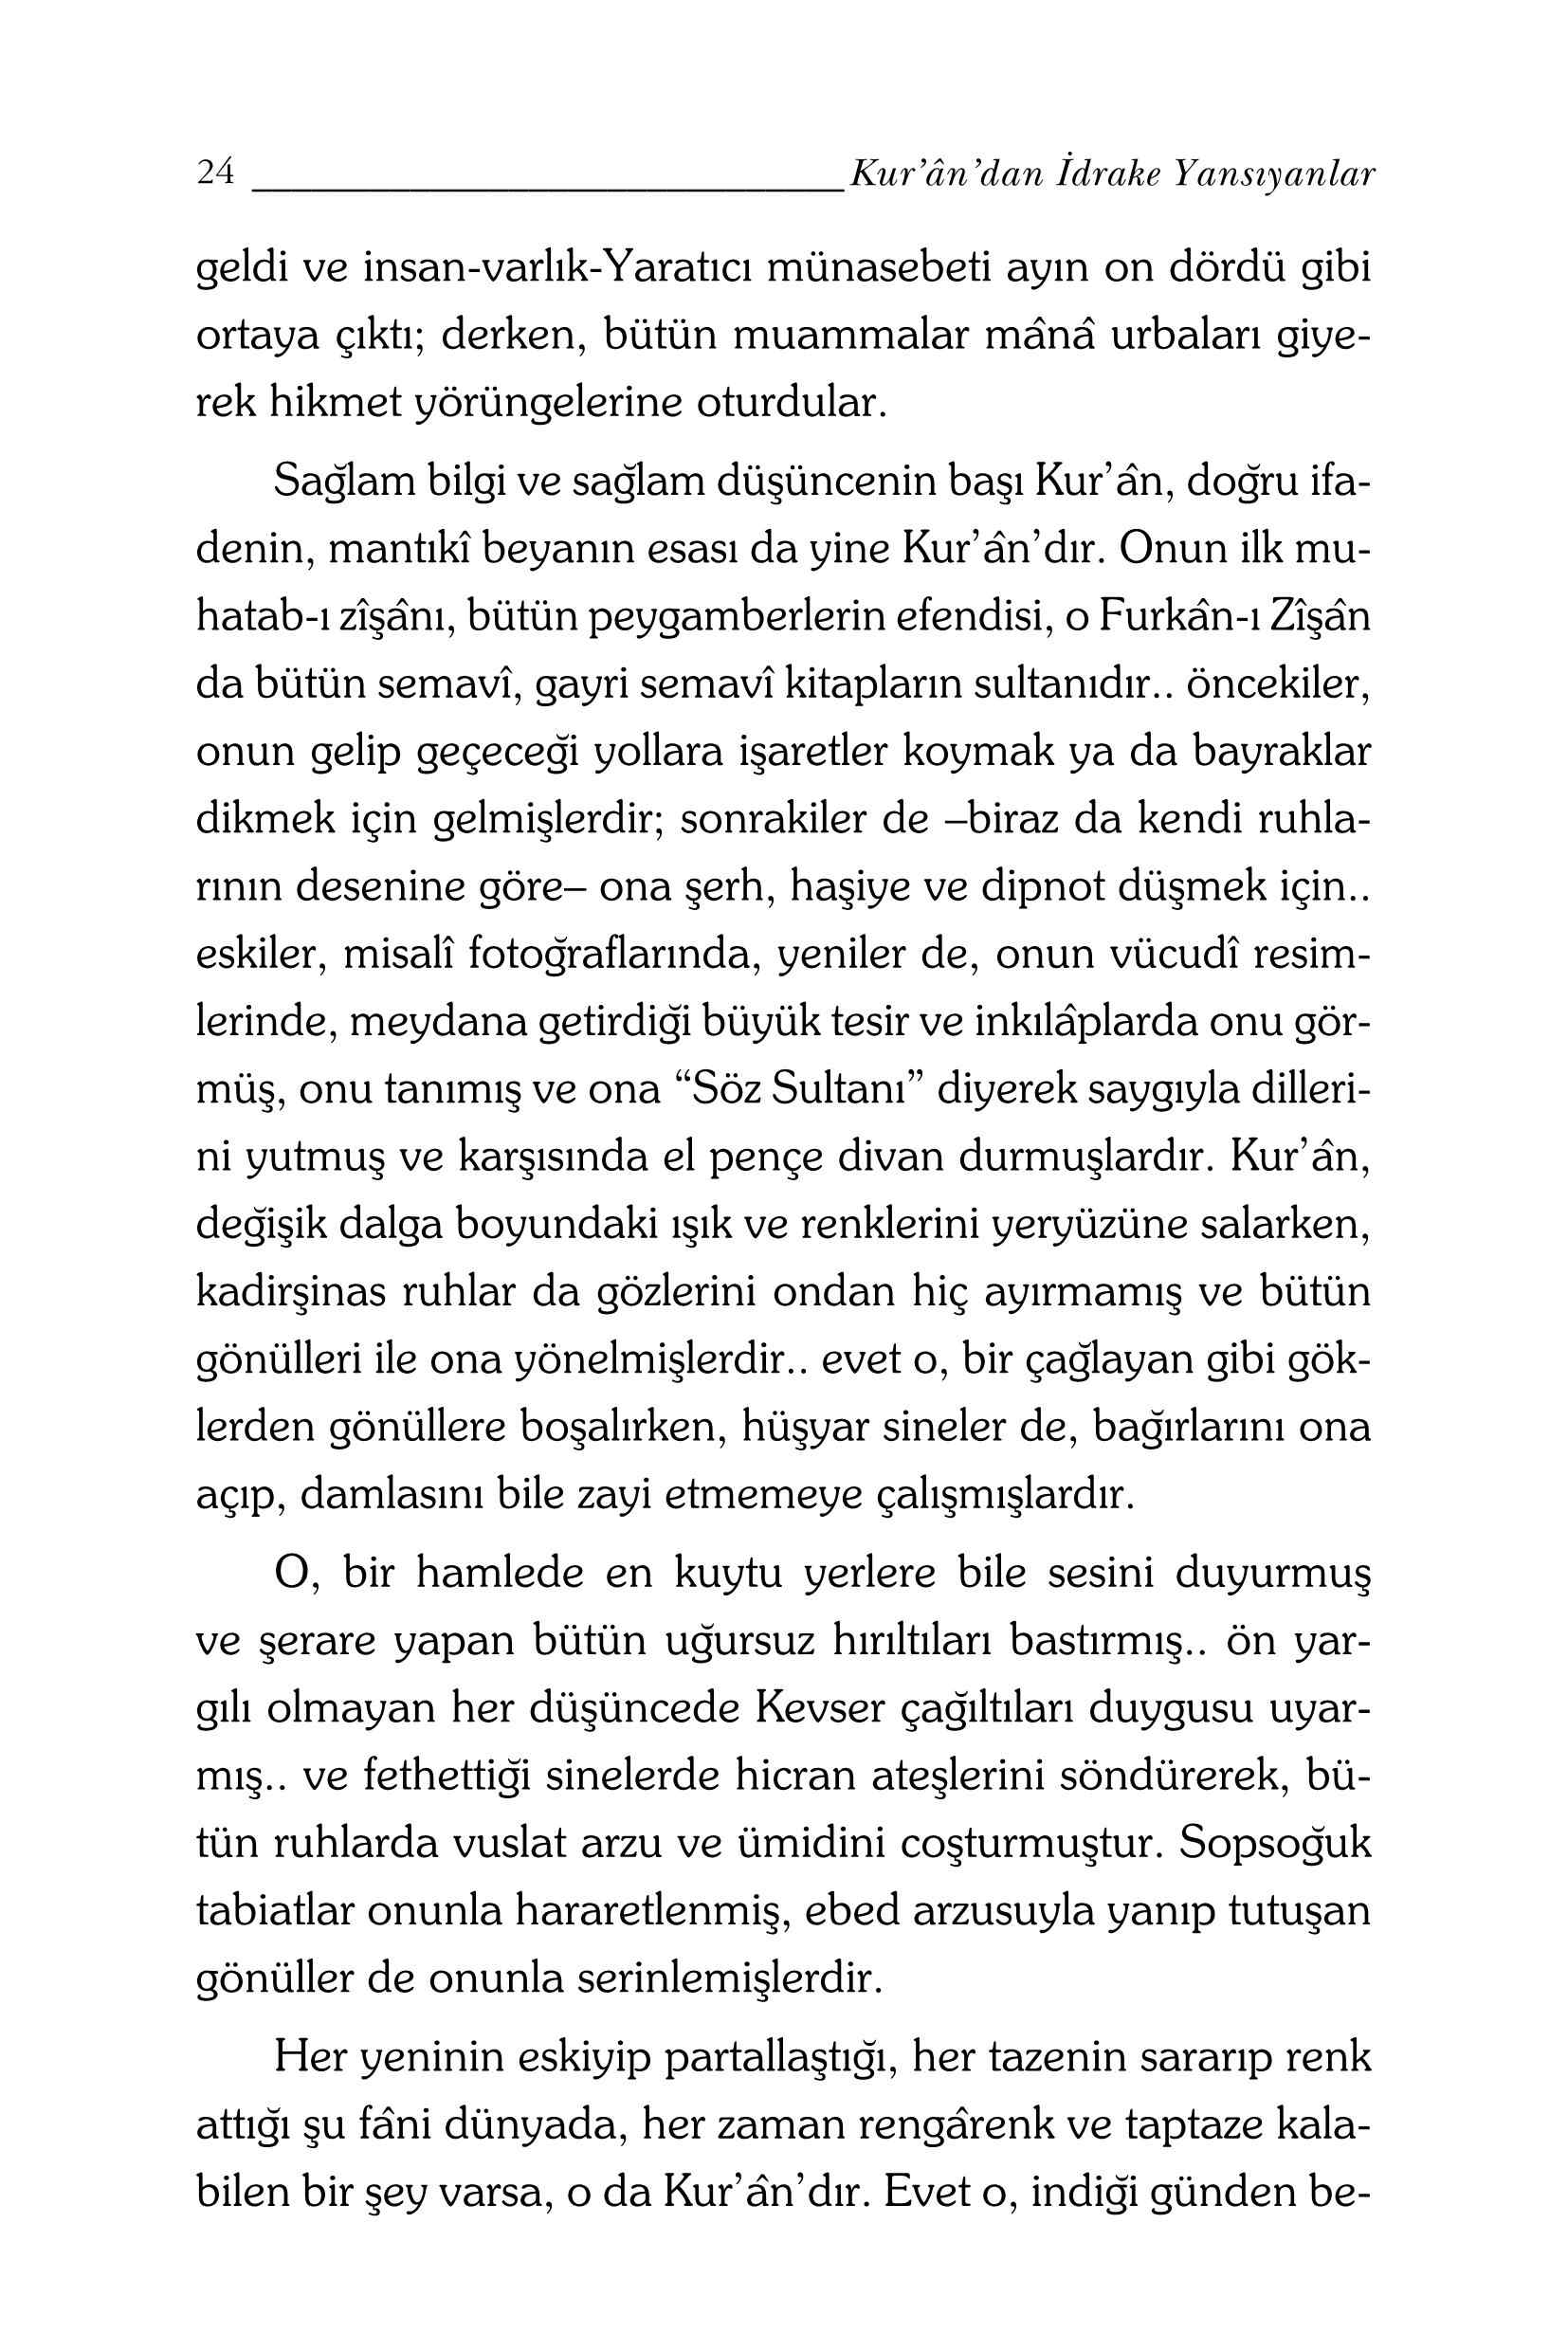 Kurandan Idrake Yansıyanlar - M F Gulen.pdf, 480-Sayfa 